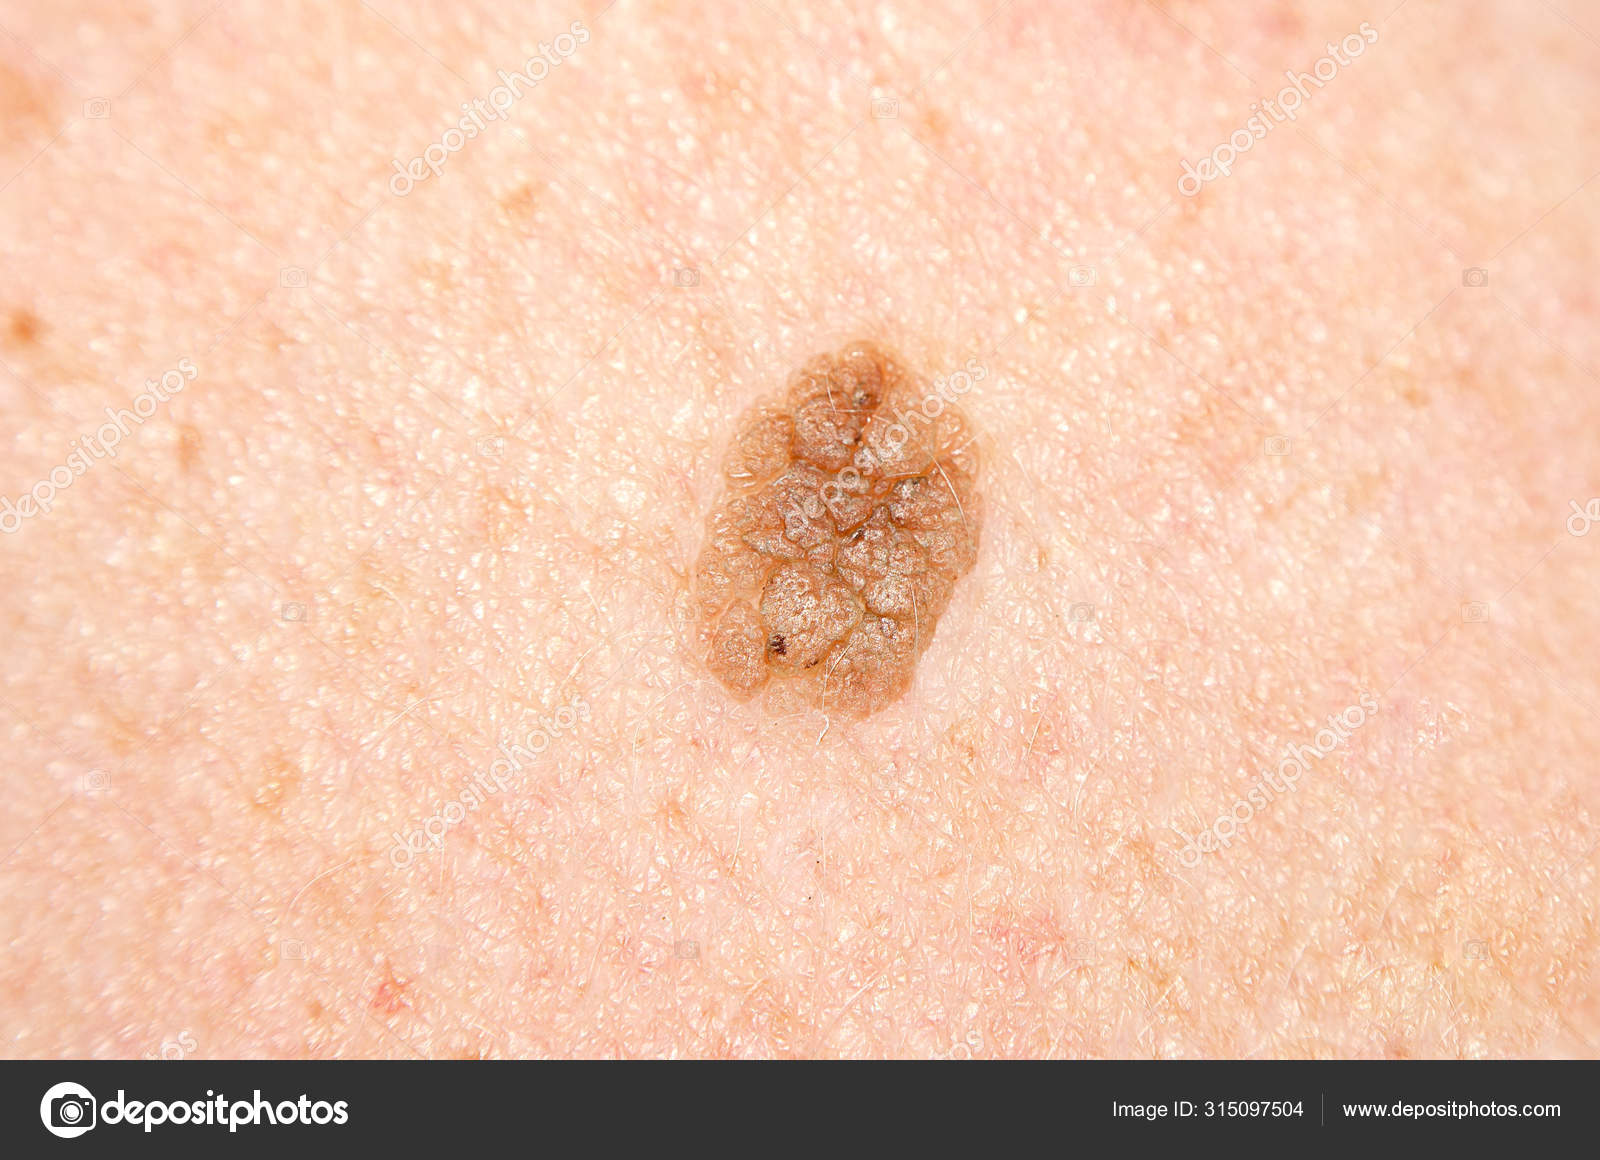 papilloma in skin)